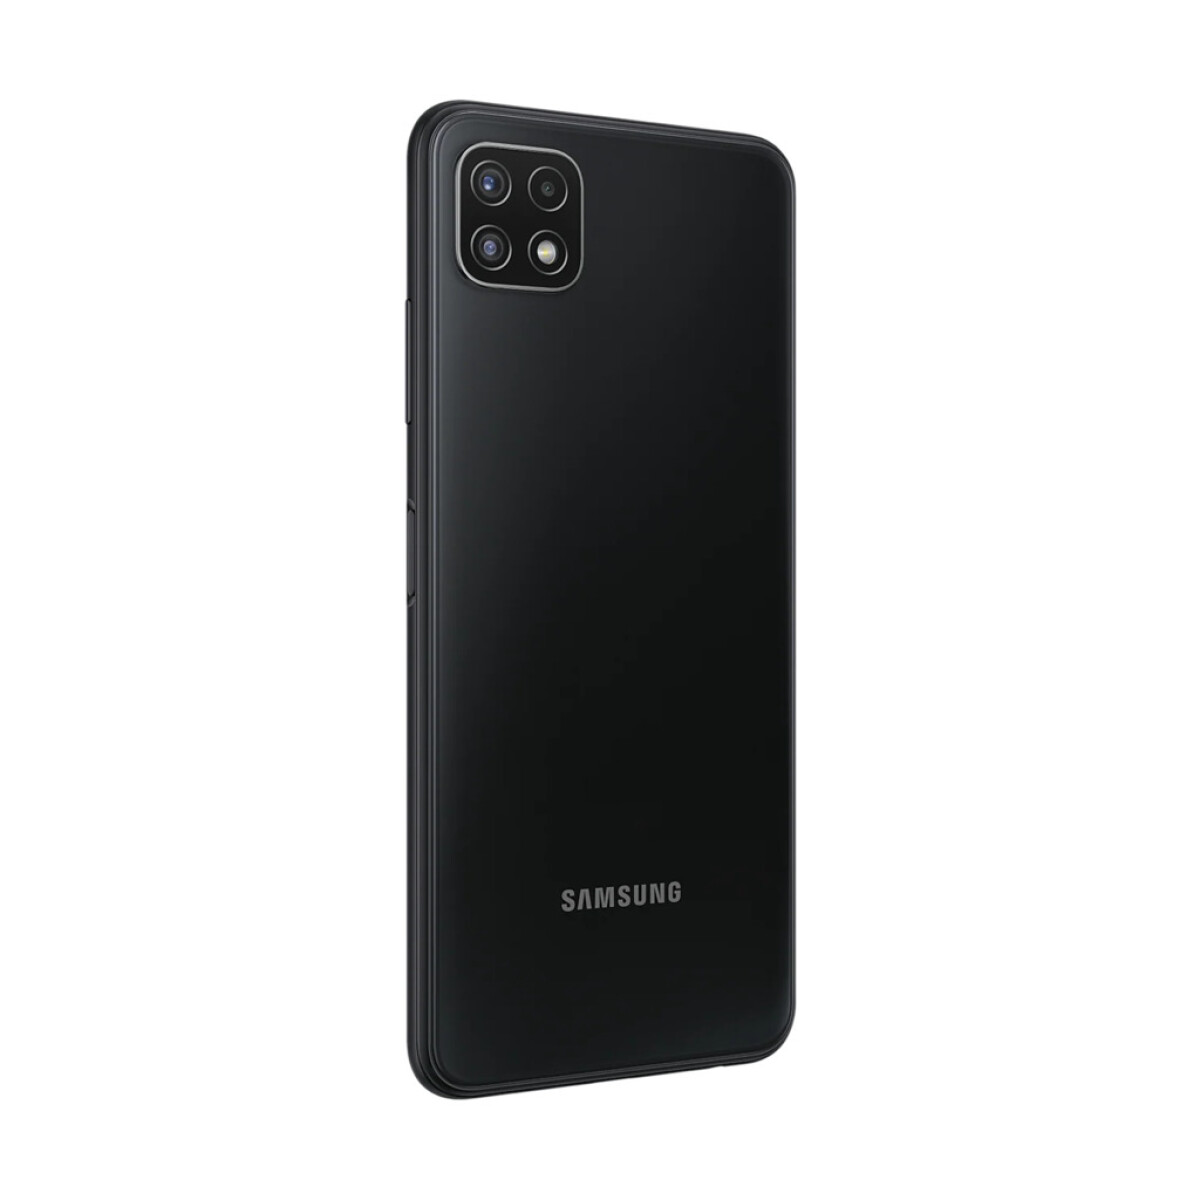 Samsung galaxy a22 5g - 128gb/4gb - dual sim Black